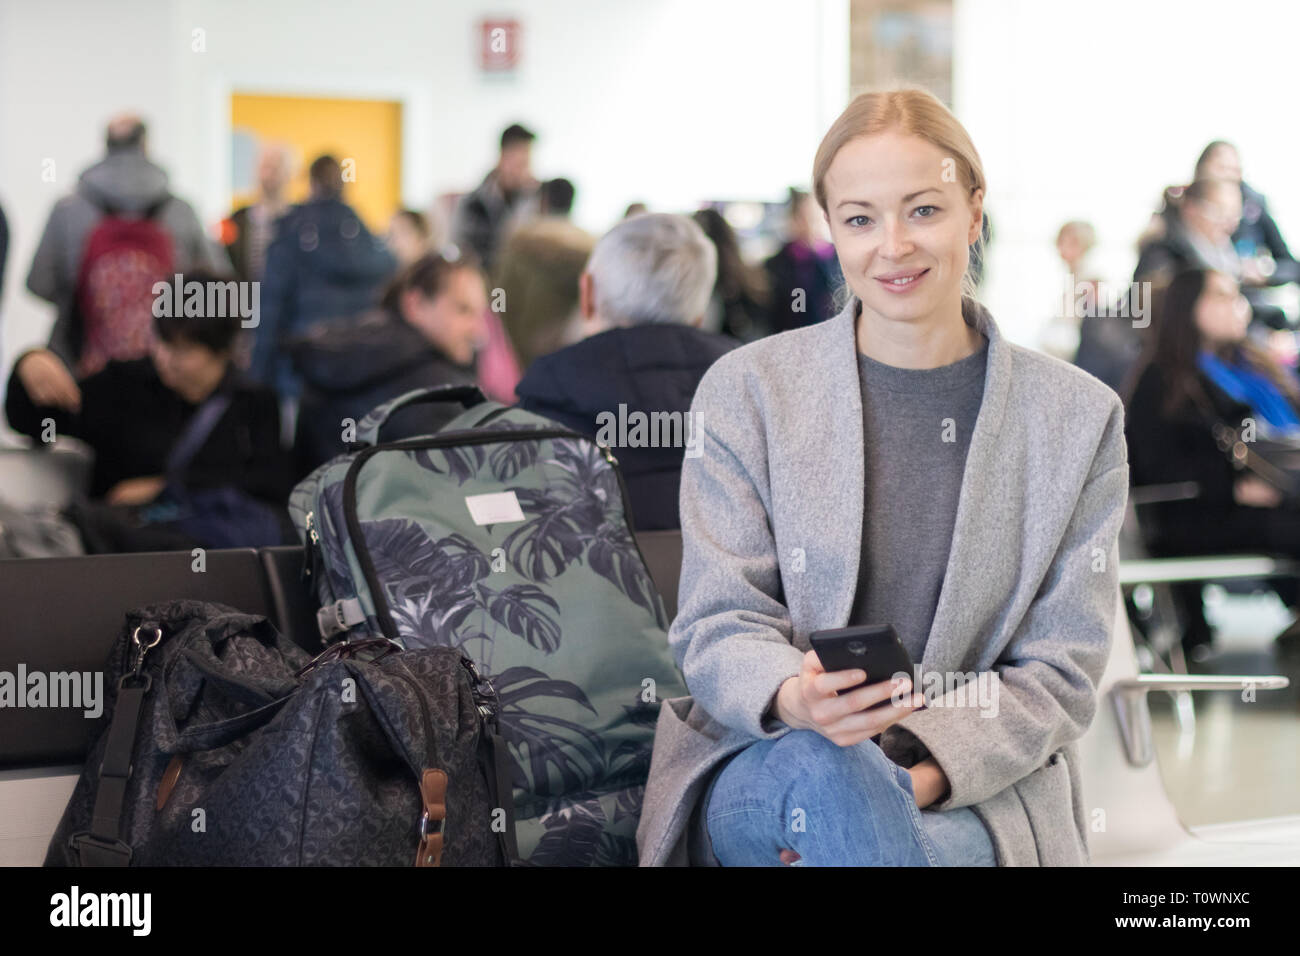 Cheerful female traveler smiling at camera, lors de la lecture sur son téléphone portable en attendant de monter à bord d'un avion à l'embarquement à l'aéroport Banque D'Images